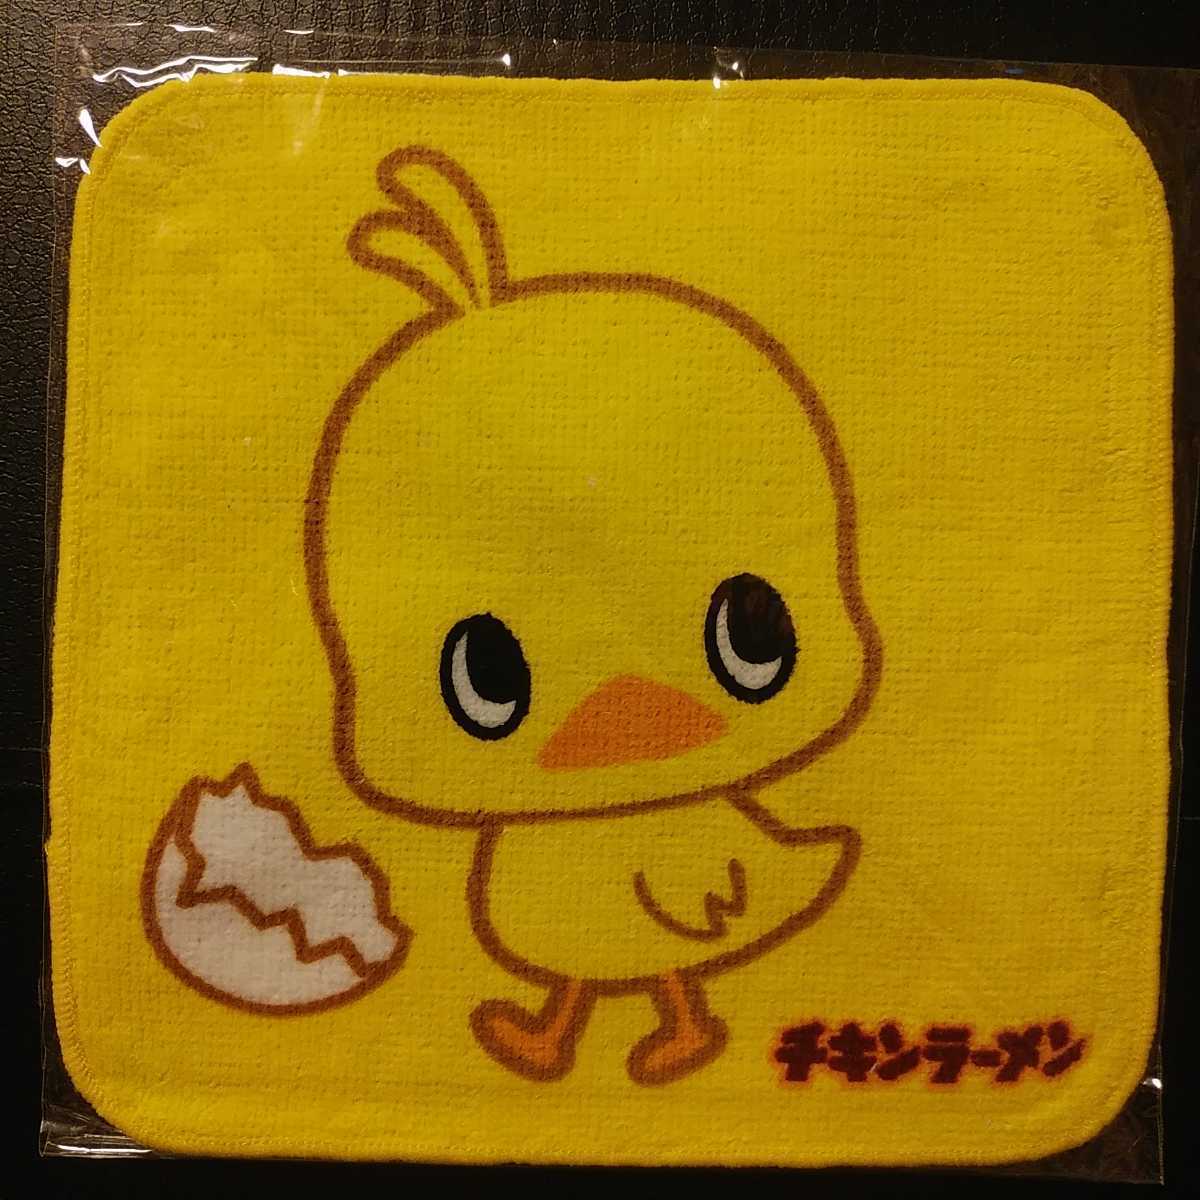  новый товар [ день Kiyoshi цыпленок Chan * полотенце для рук ] носовой платок * день Kiyoshi chi gold ramen * прогулка * бесплатная доставка *